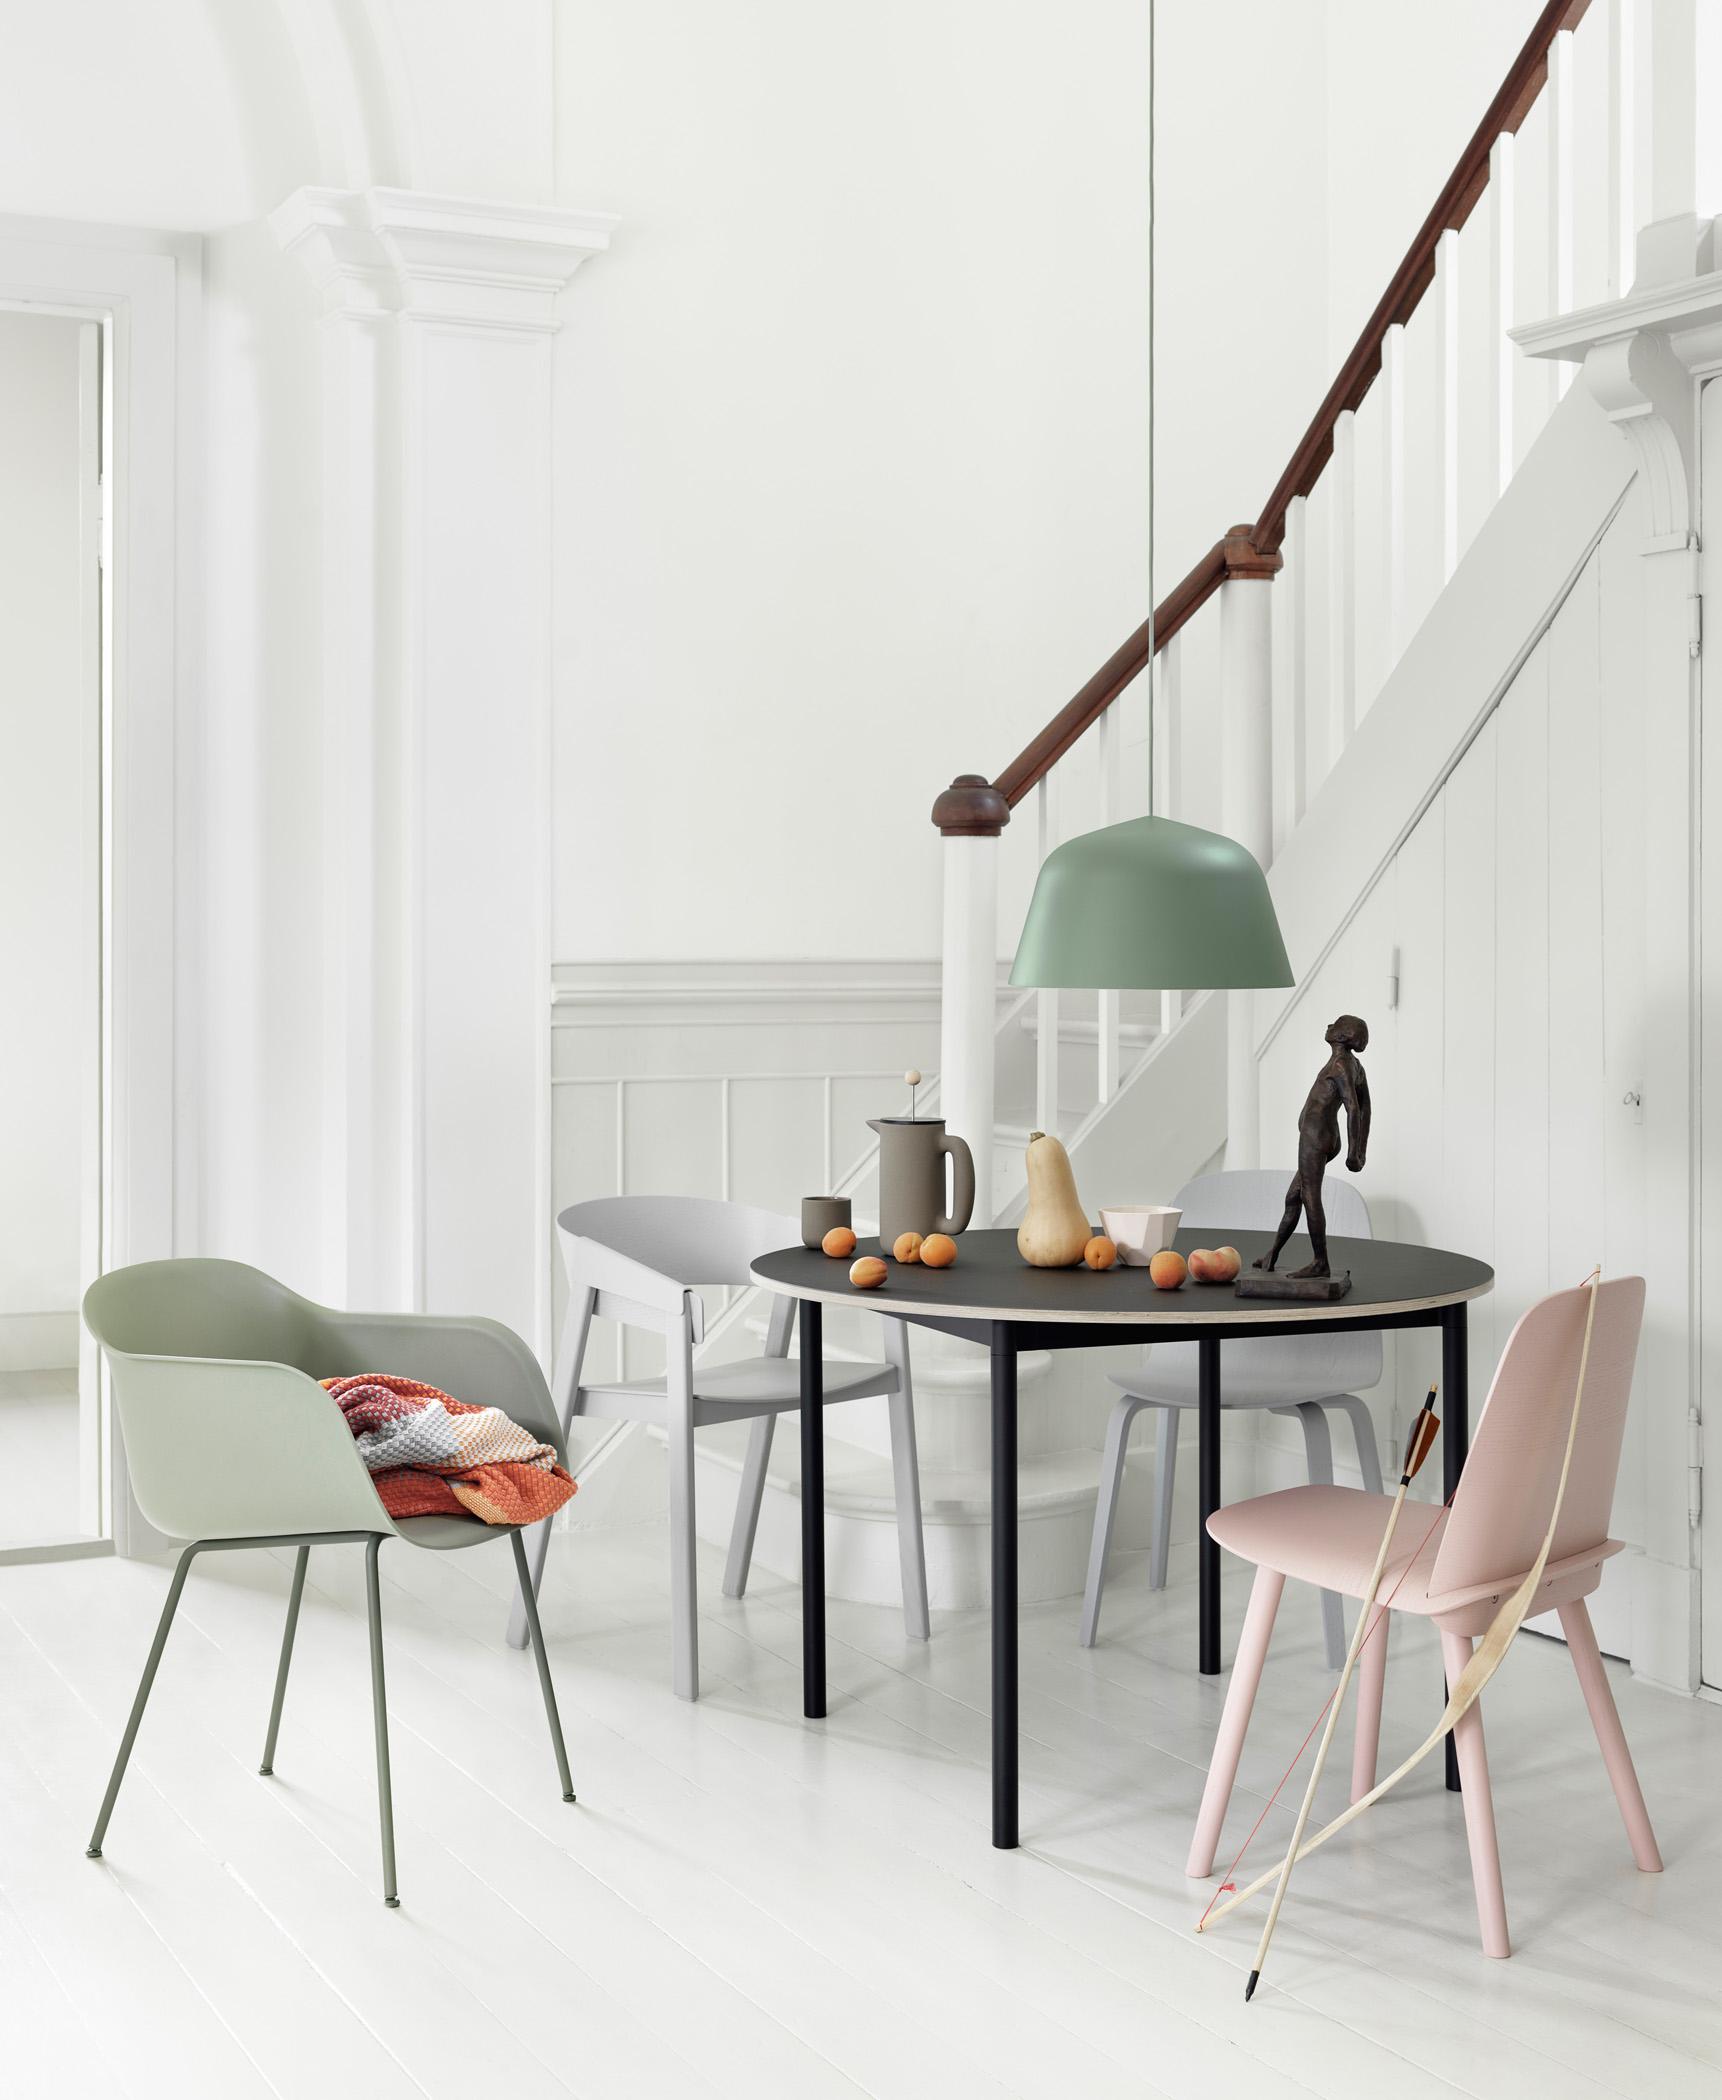 Moderne Möbel im Esszimmer #esstisch #pendelleuchte #runderesstisch #rundertisch #zimmergestaltung ©Muuto